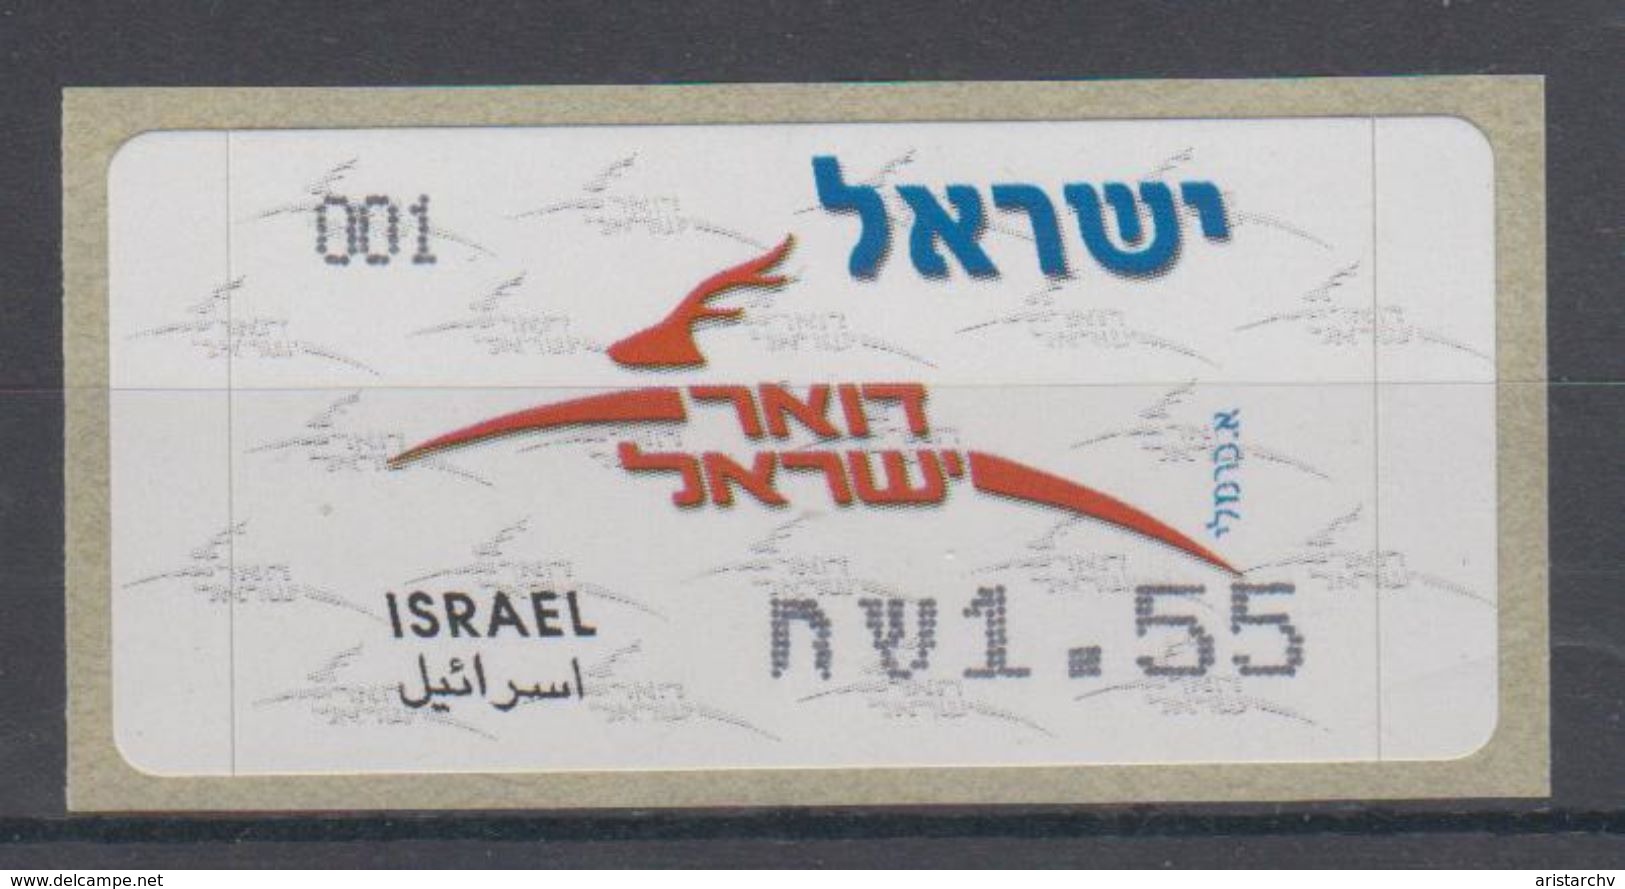 ISRAEL 2008 KLUSSENDORF ATM DEER POST WHITE TYPE 1.55 2.4 SHEKELS - Franking Labels